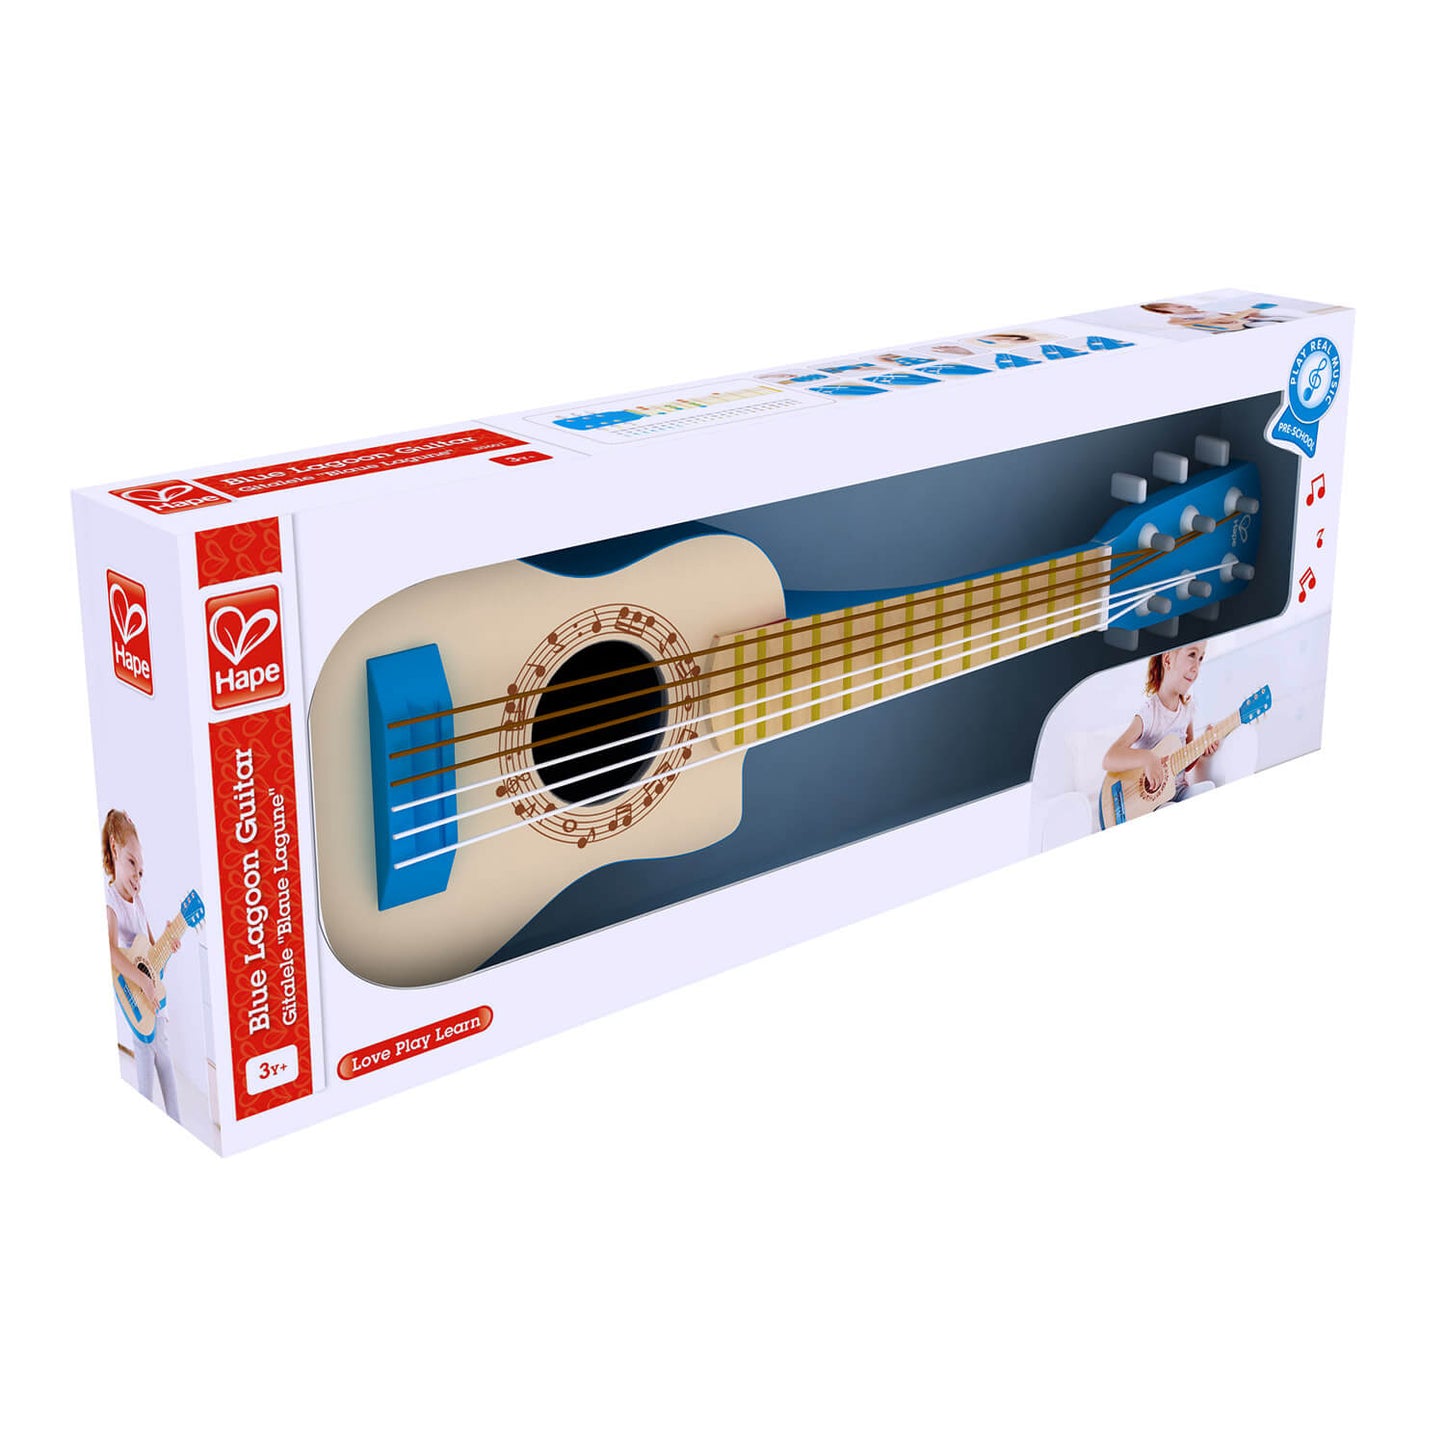 Blue ukulele